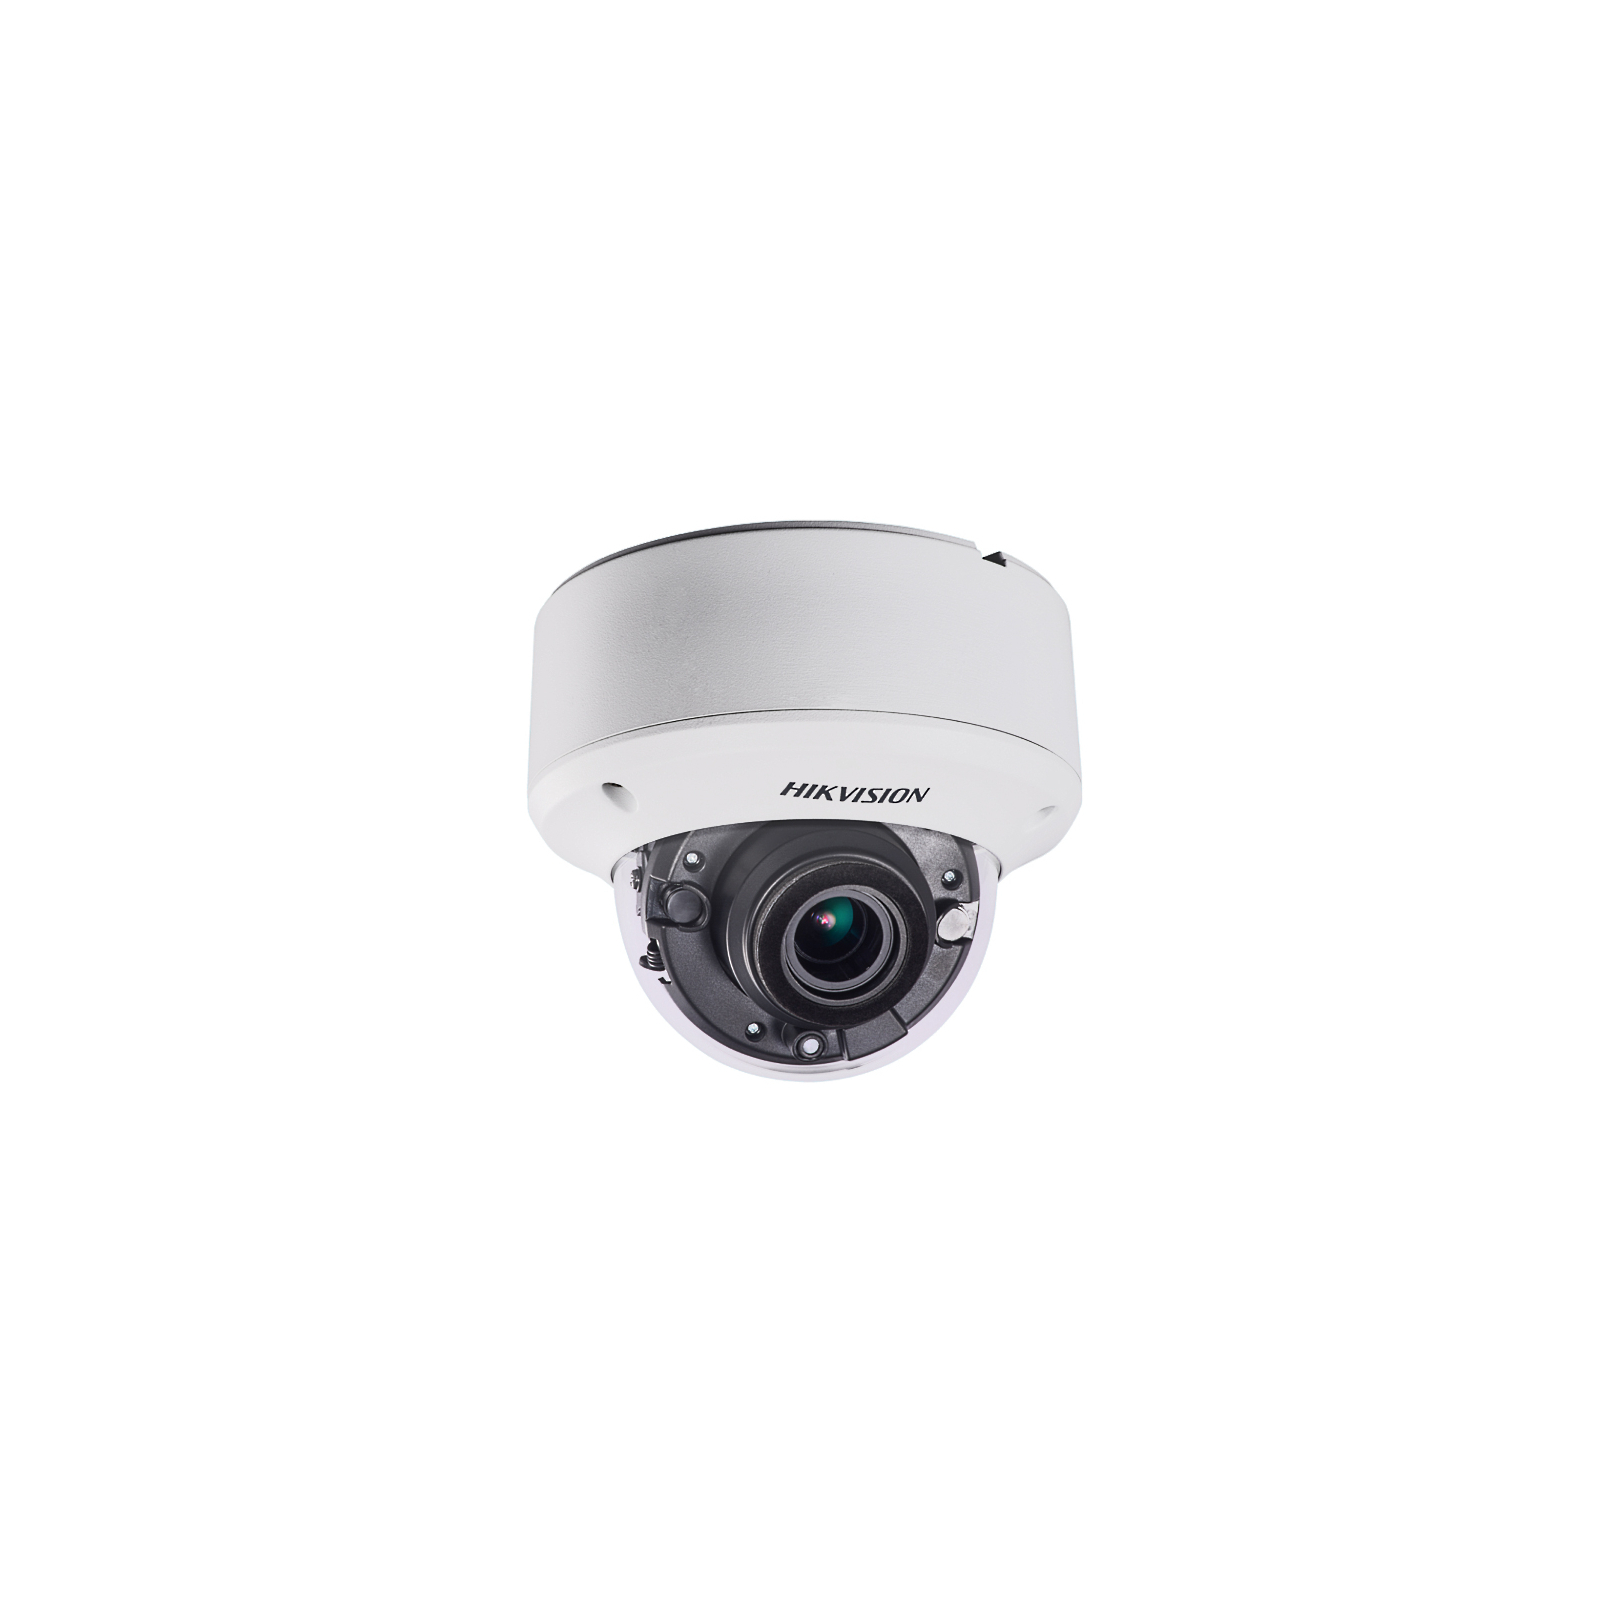 Камера видеонаблюдения Hikvision DS-2CE56F7T-VPIT3Z (2.8-12)